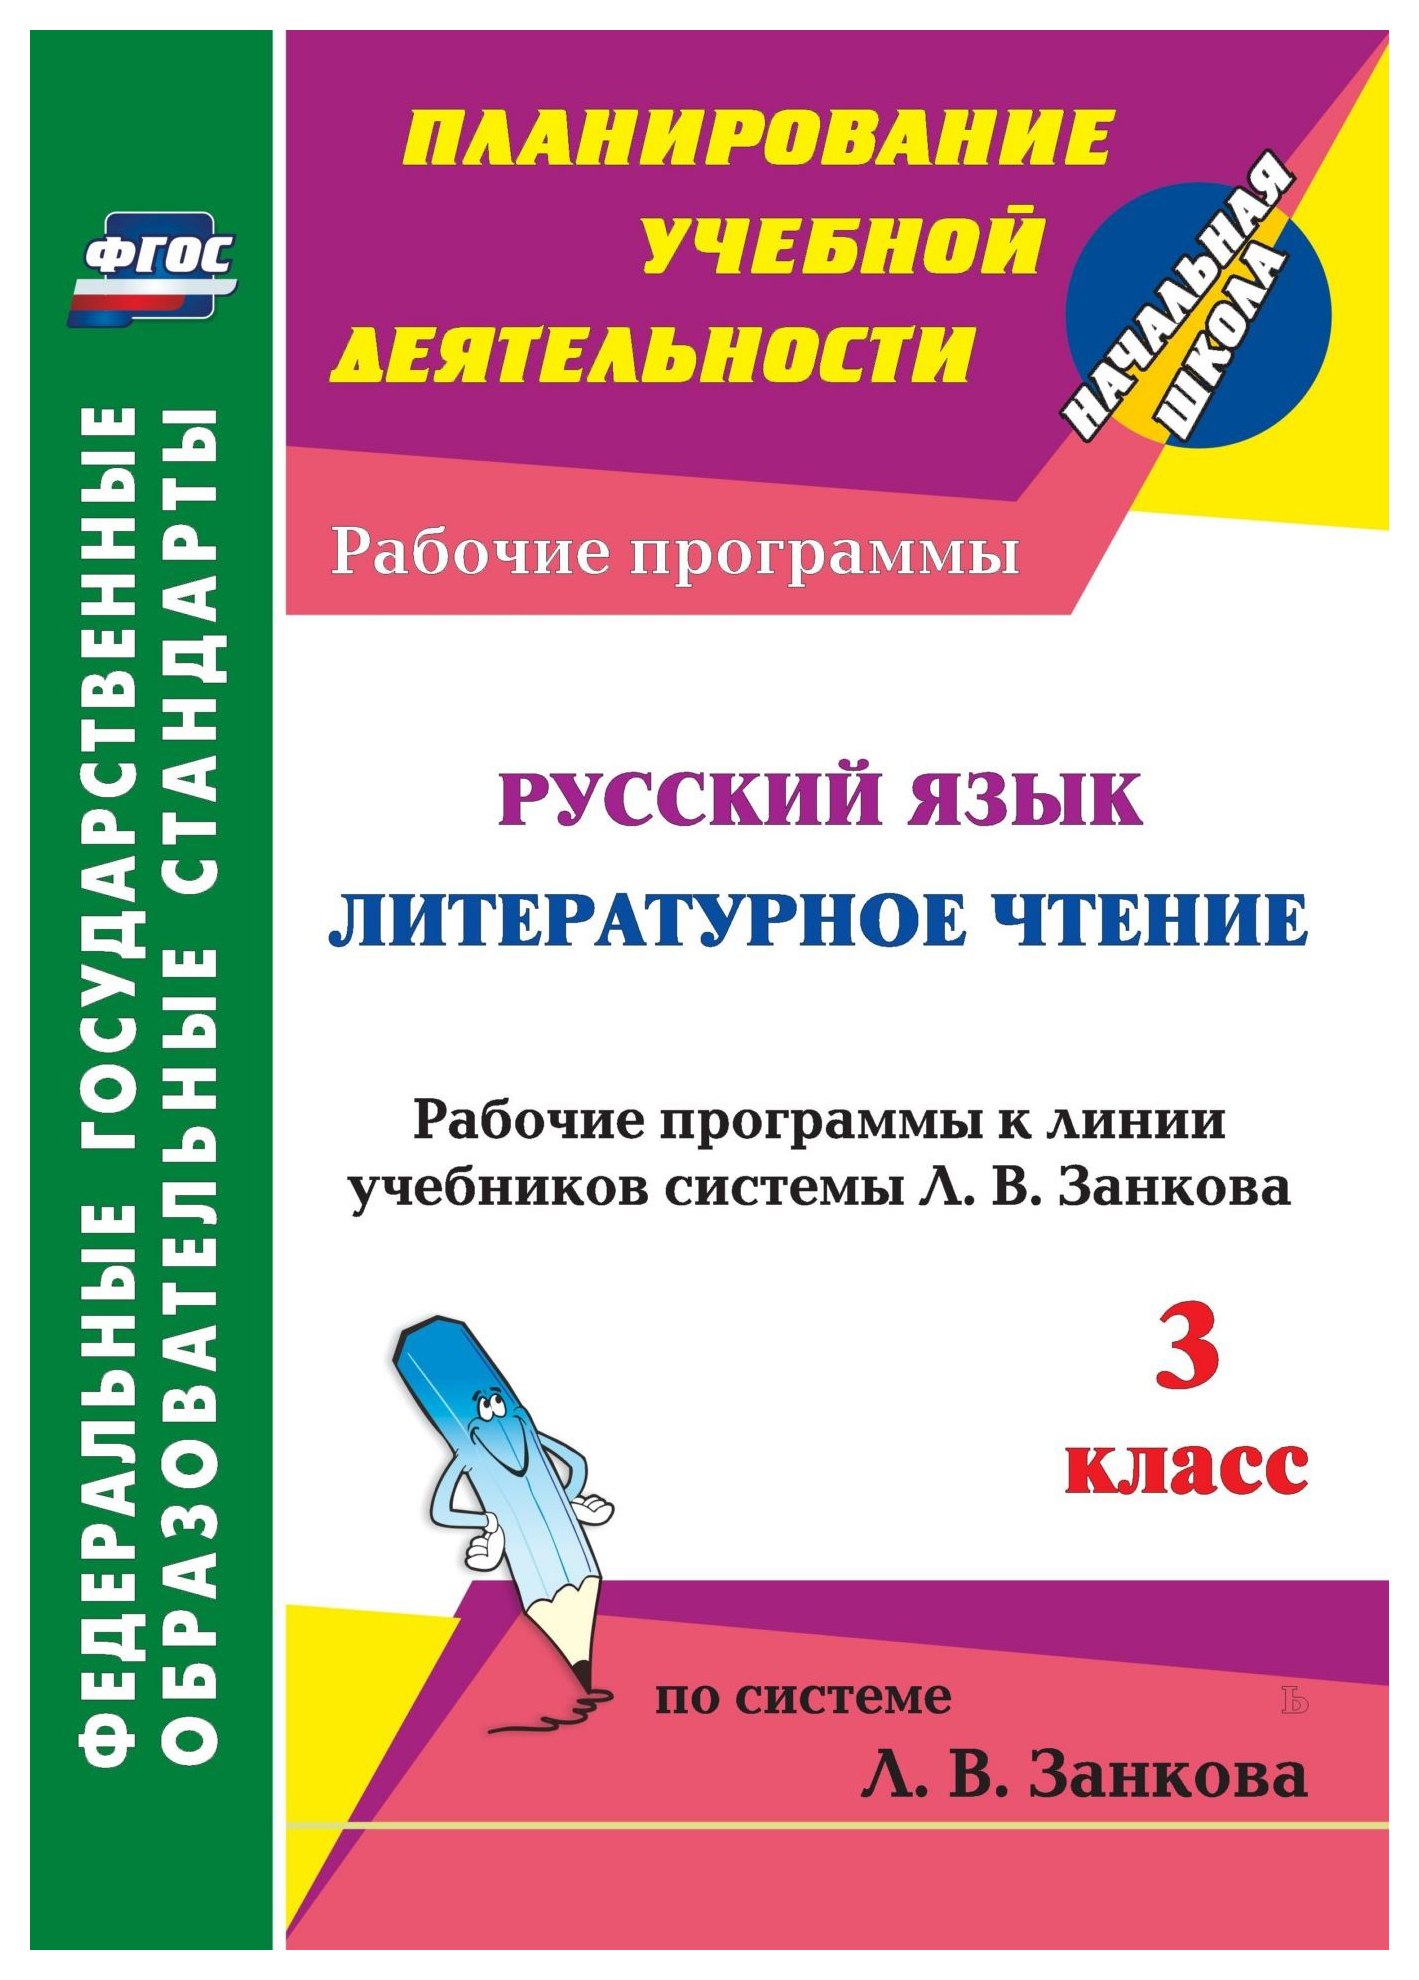 Рабочие программы Русский язык. Литературное чтение к учебникам системы Занкова. 3 класс